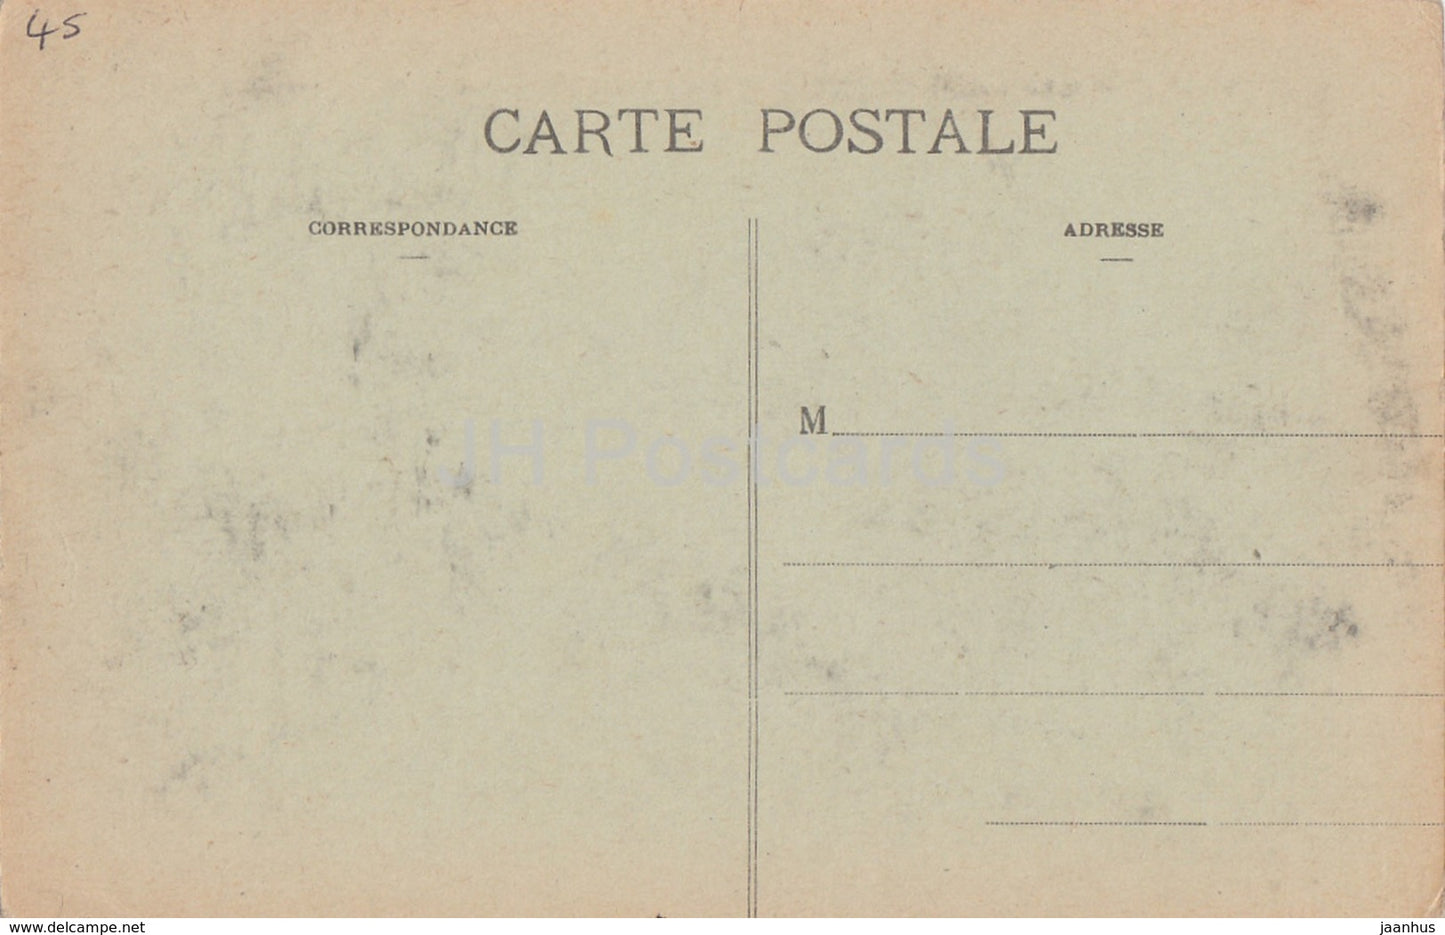 Château des Bezard - Façade Sud - Nogent sur Vernisson - château - carte postale ancienne - France - inutilisé